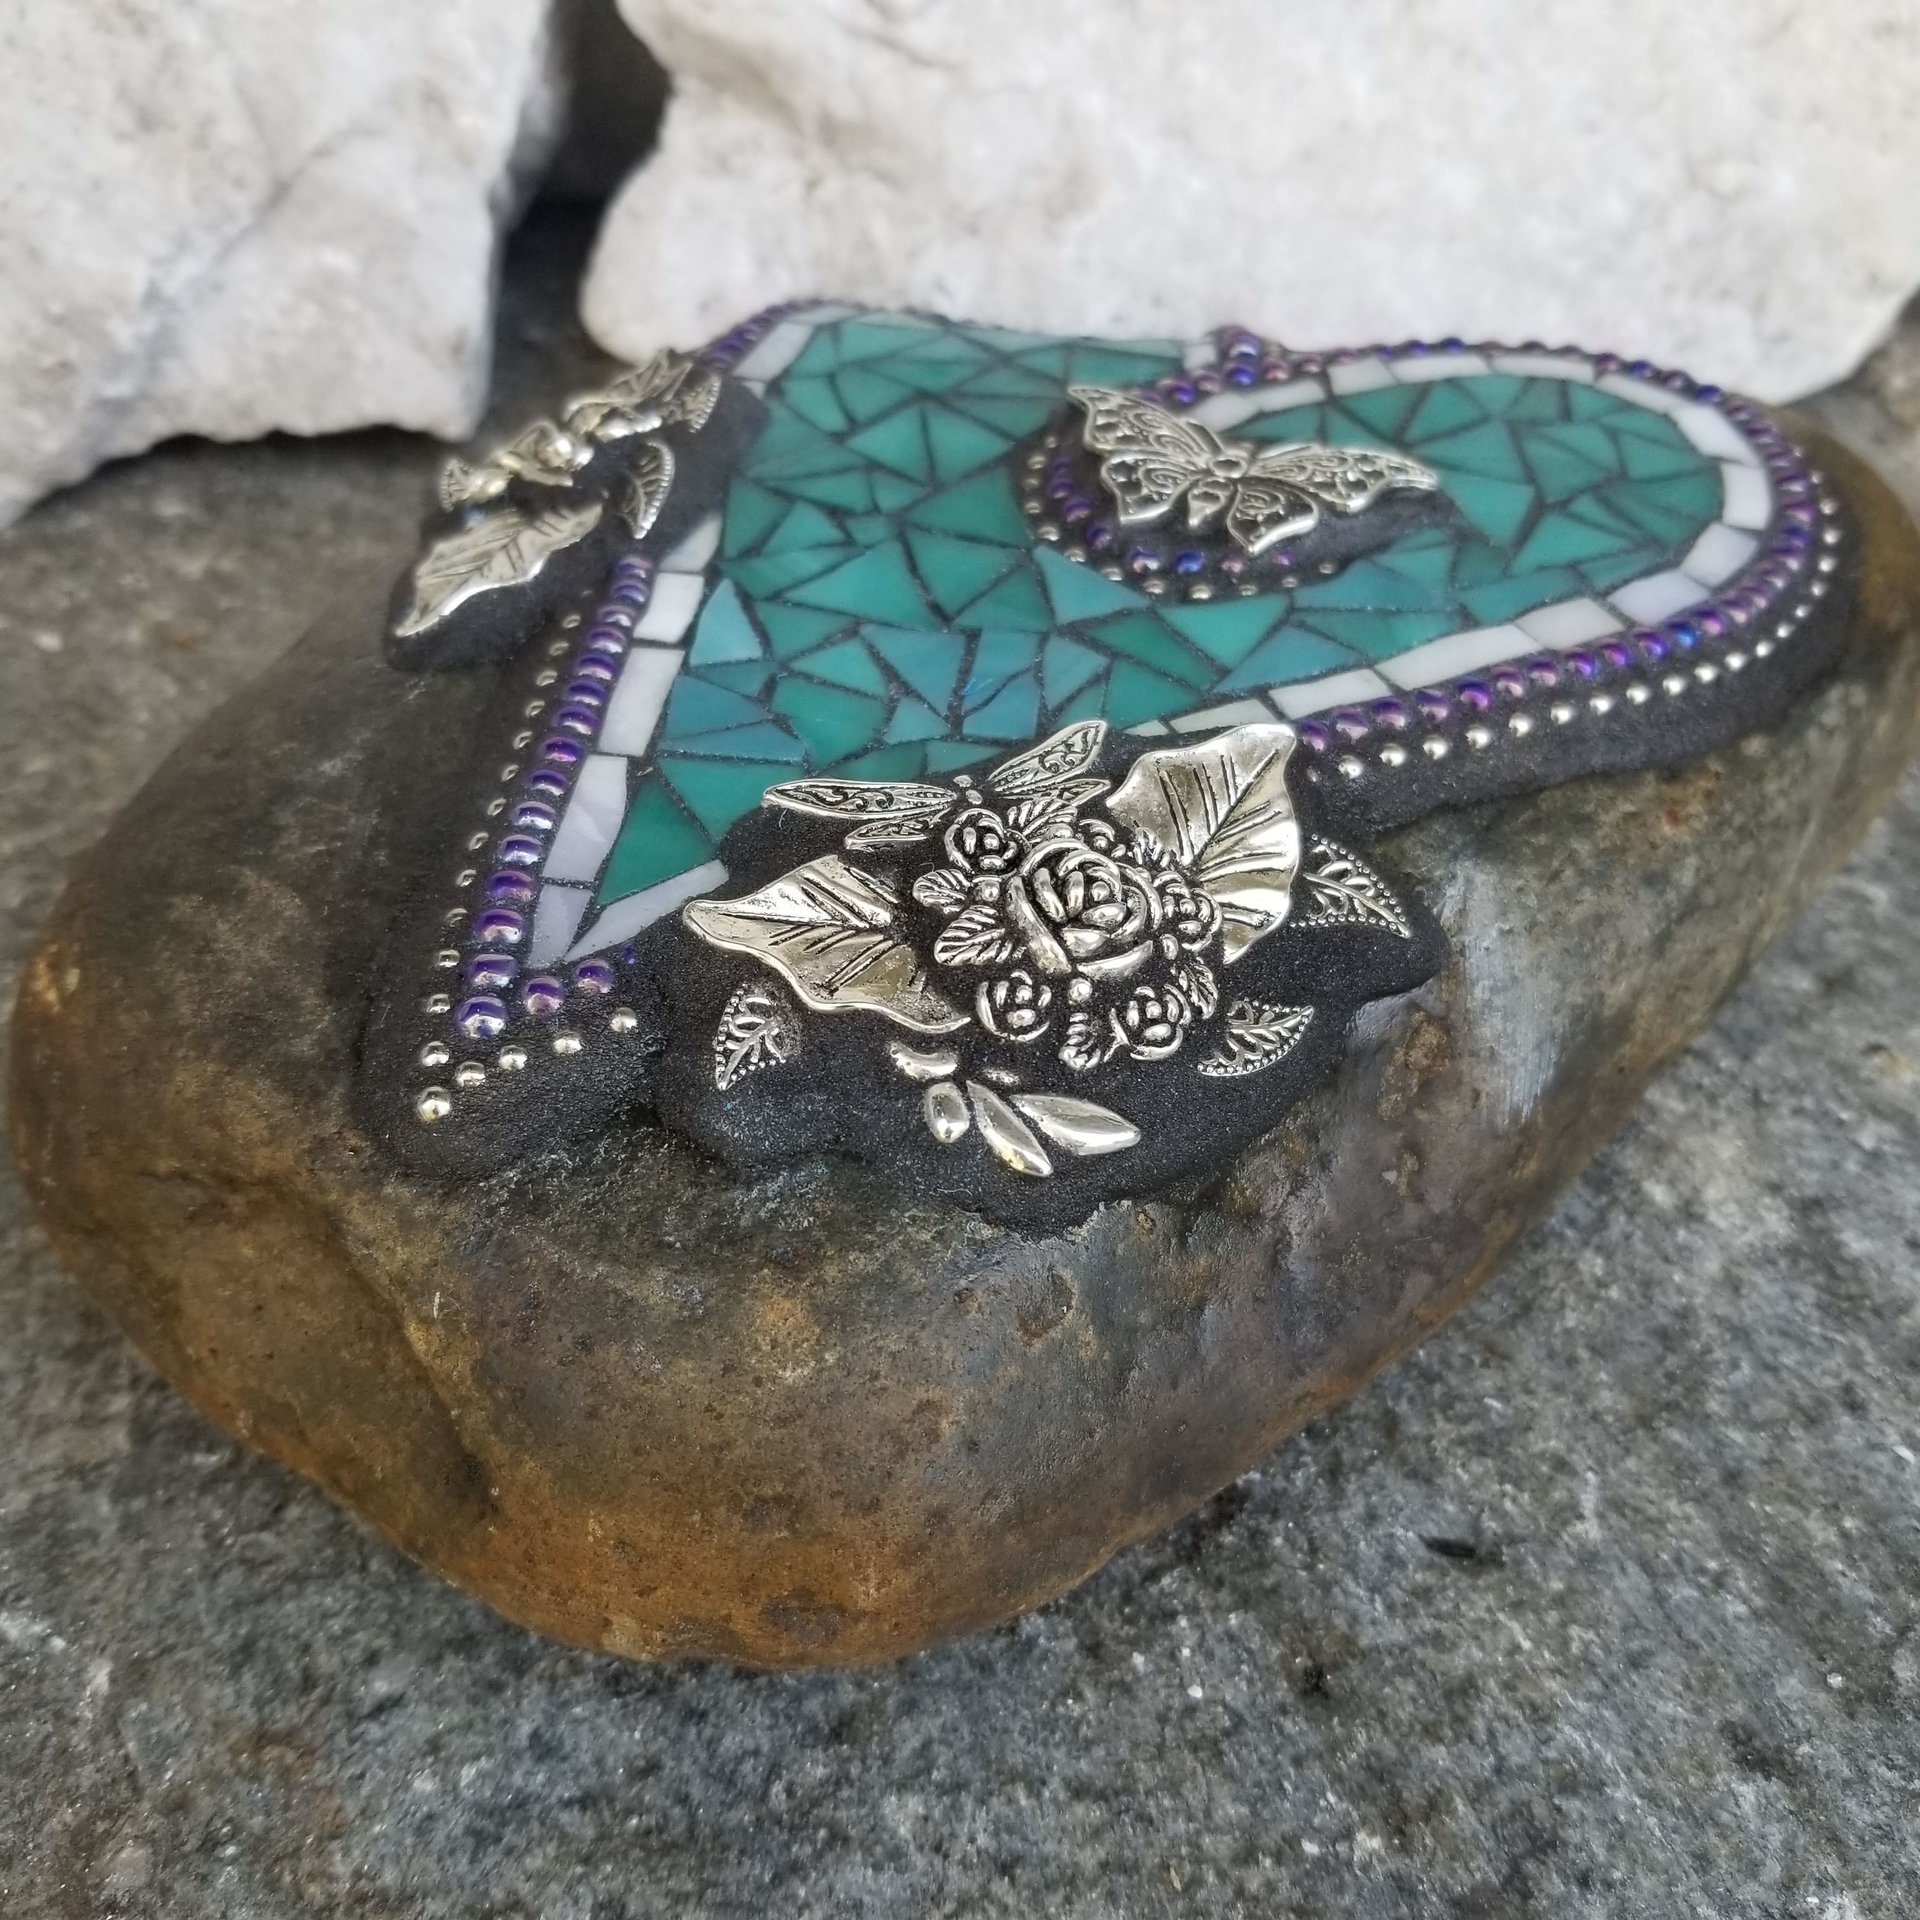 Teal Mosaic Heart Garden Stone, Mosaic Garden Decor